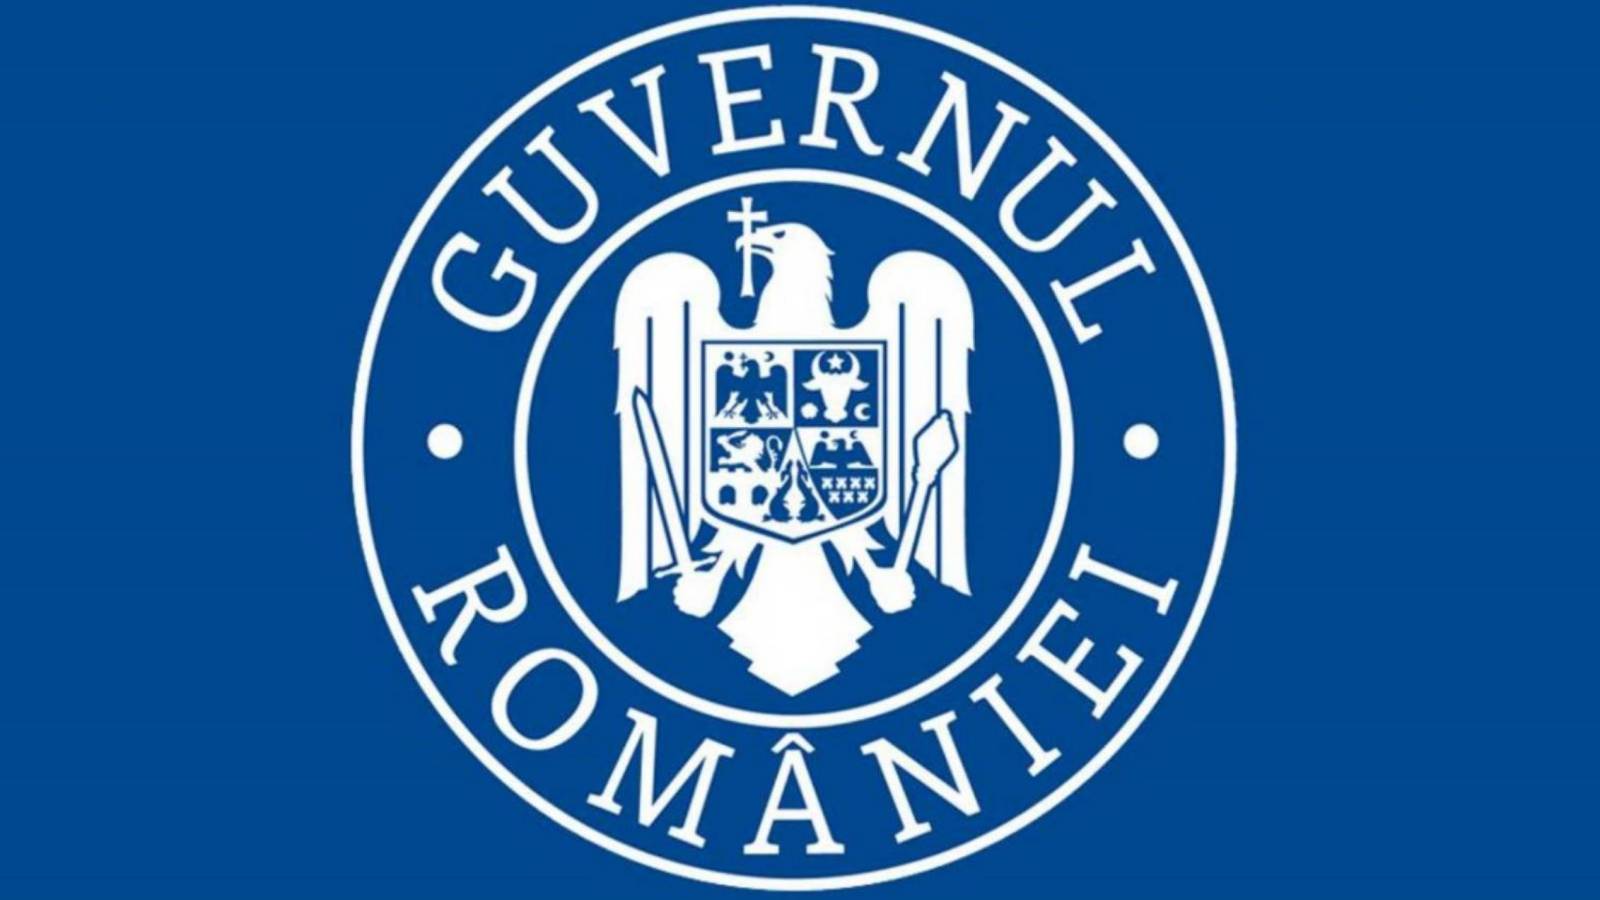 Aankondiging dat de regering van Roemenië terugkeert naar de normaliteit